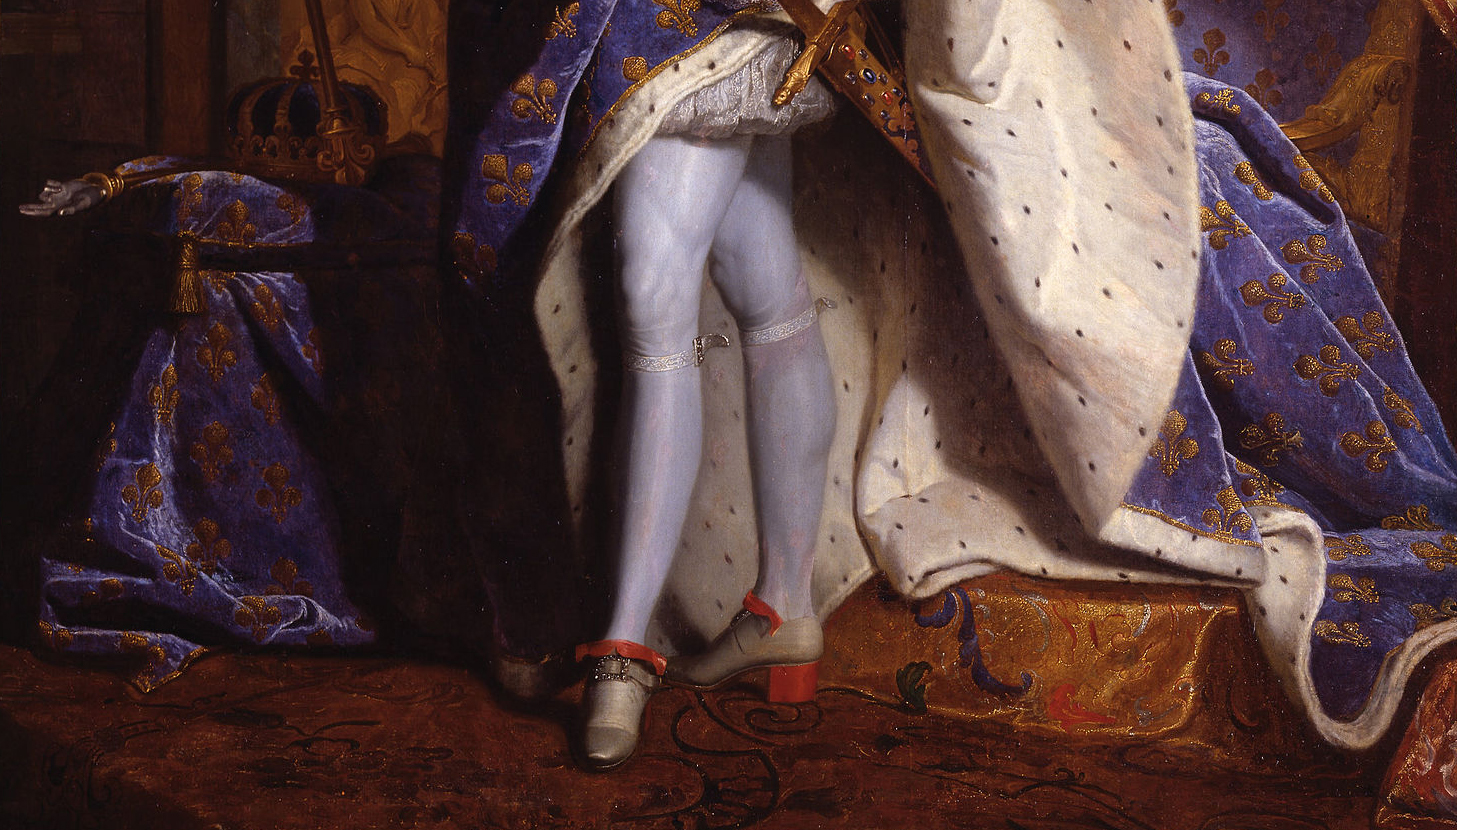 The king’s legs (detail), Hyacinthe Rigaud, Louis XIV, 1701, oil on canvas, 27.7 x 33.95 cm (Musée du Louvre, Paris)